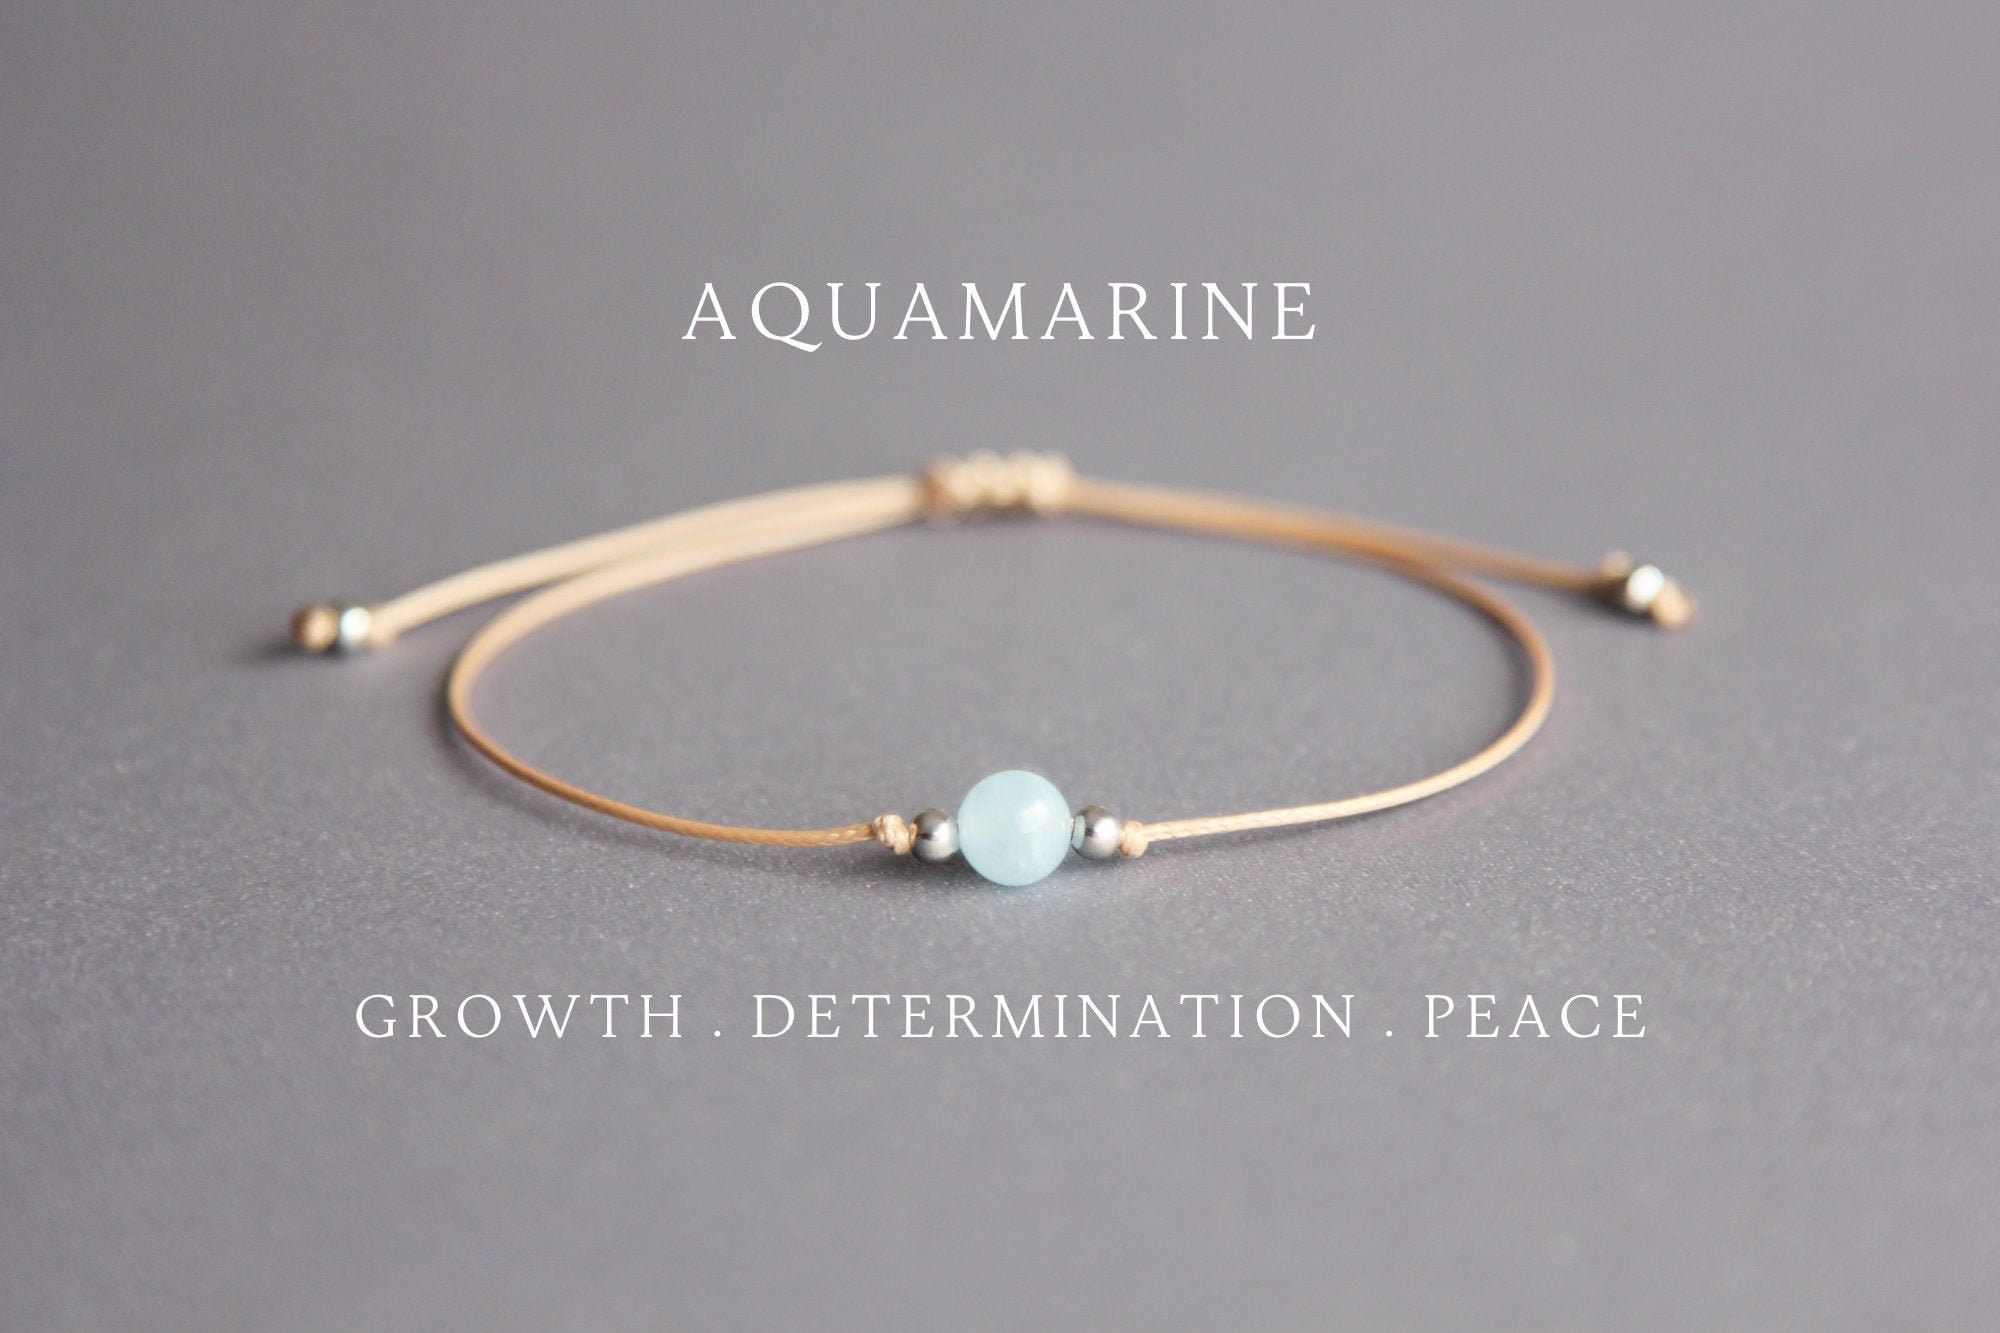 Aquamarine Jewelry - Aquamarine Mala Necklace - Aquamarine Bracelets